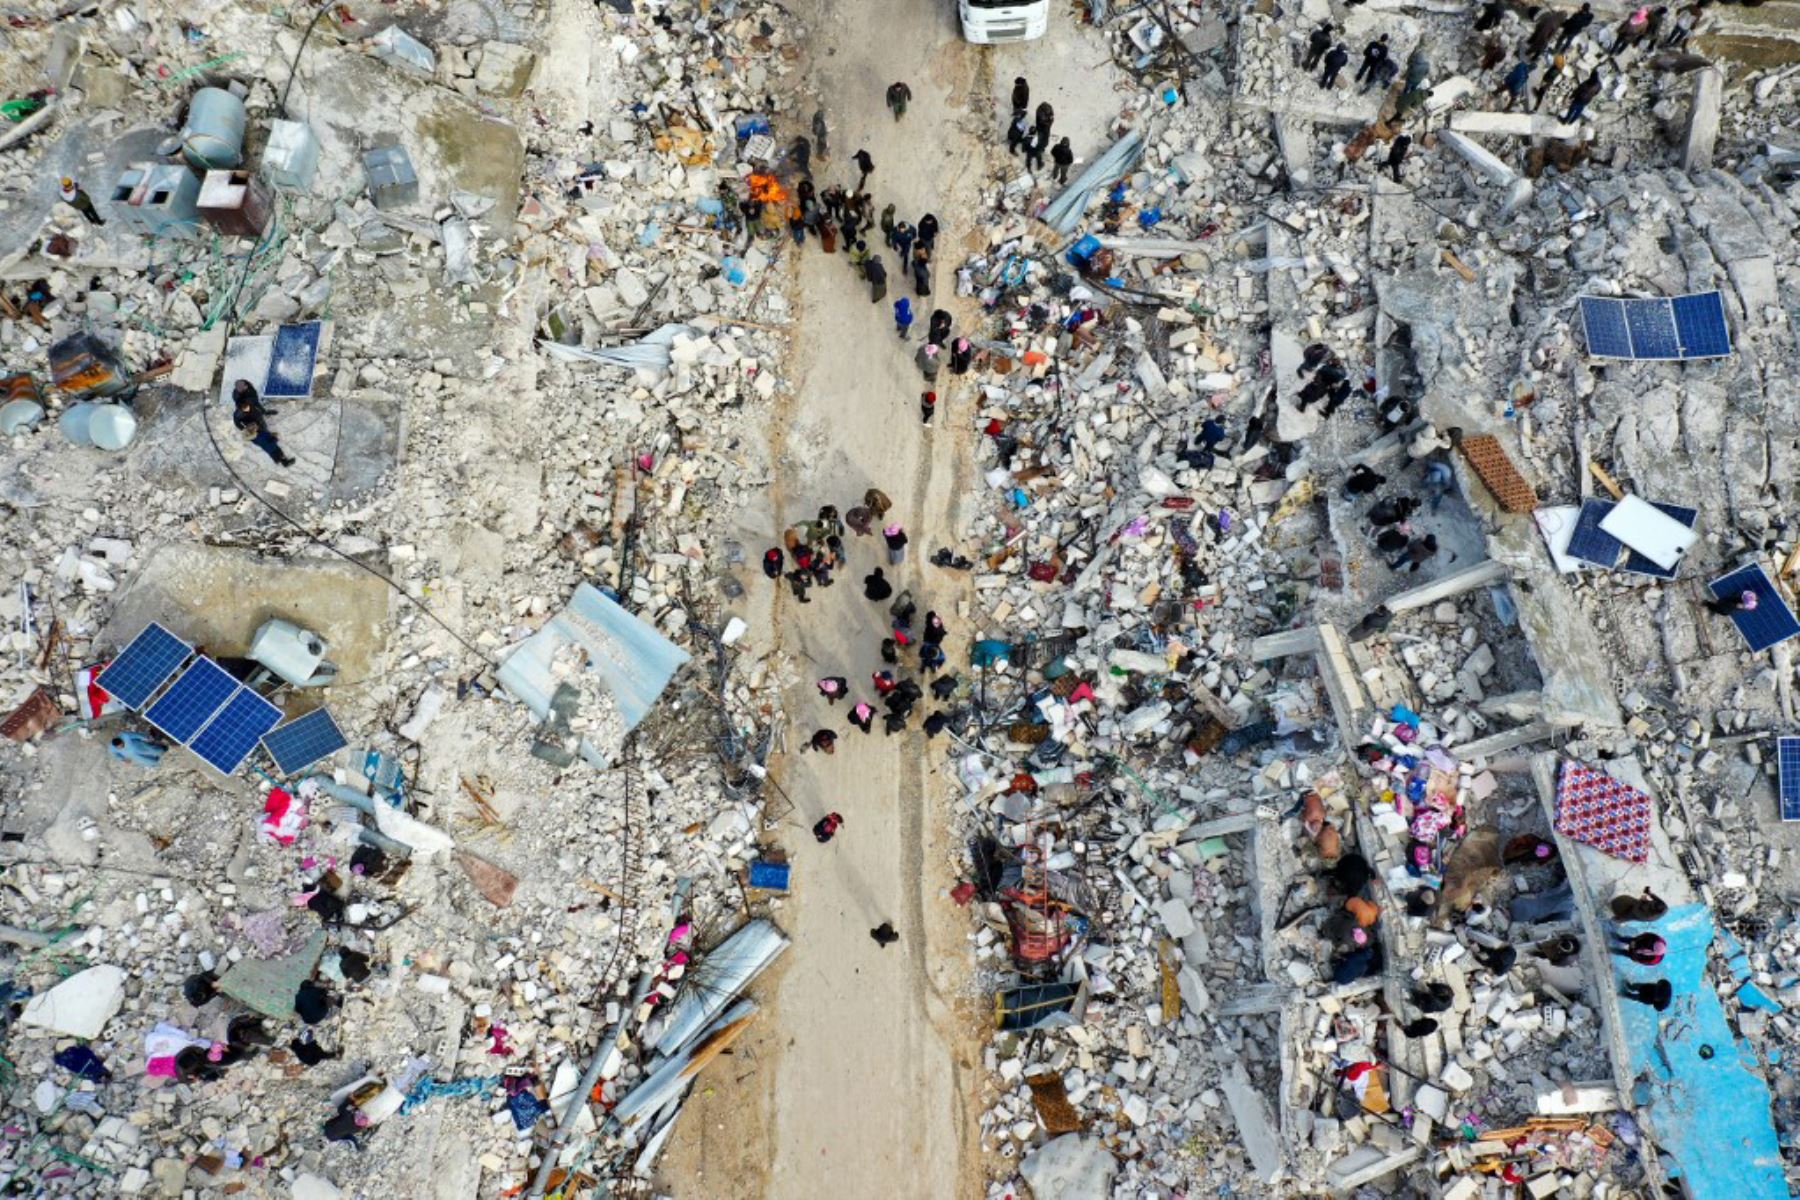 Vista aérea muestra a los residentes que buscan víctimas entre los escombros de edificios derrumbados luego de un terremoto en la ciudad de Jandaris, en el campo de la ciudad de Afrin, en el noroeste de Siria. Foto: AFP